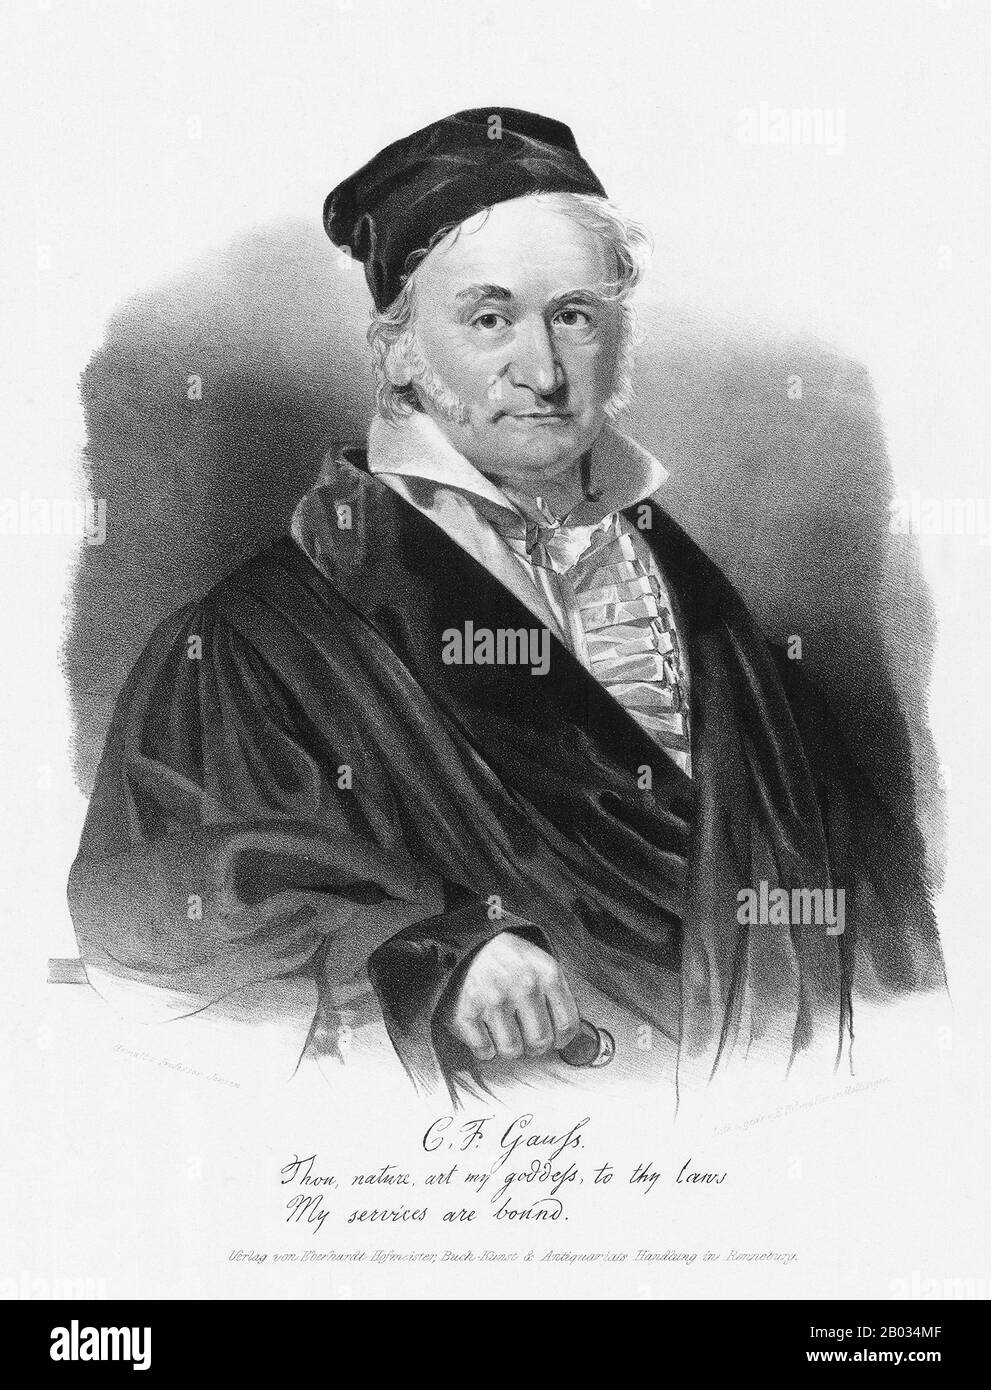 Johann Carl Friedrich Gauss (dal 30 aprile 1777 al 23 febbraio 1855) è stato un matematico tedesco che ha contribuito in modo significativo a molti campi, tra cui la teoria dei numeri, l'algebra, le statistiche, l'analisi, la geometria differenziale, la geodetica, la geofisica, la meccanica, l'elettrostatica, l'astronomia, la teoria della matrice e l'ottica. A volte definito il matematico principeps (latino, il più grande dei matematici) e il più grande matematico dall'antichità, Gauss ha avuto un'influenza eccezionale in molti campi della matematica e della scienza ed è classificato come uno dei più influenti matematici della storia. Foto Stock